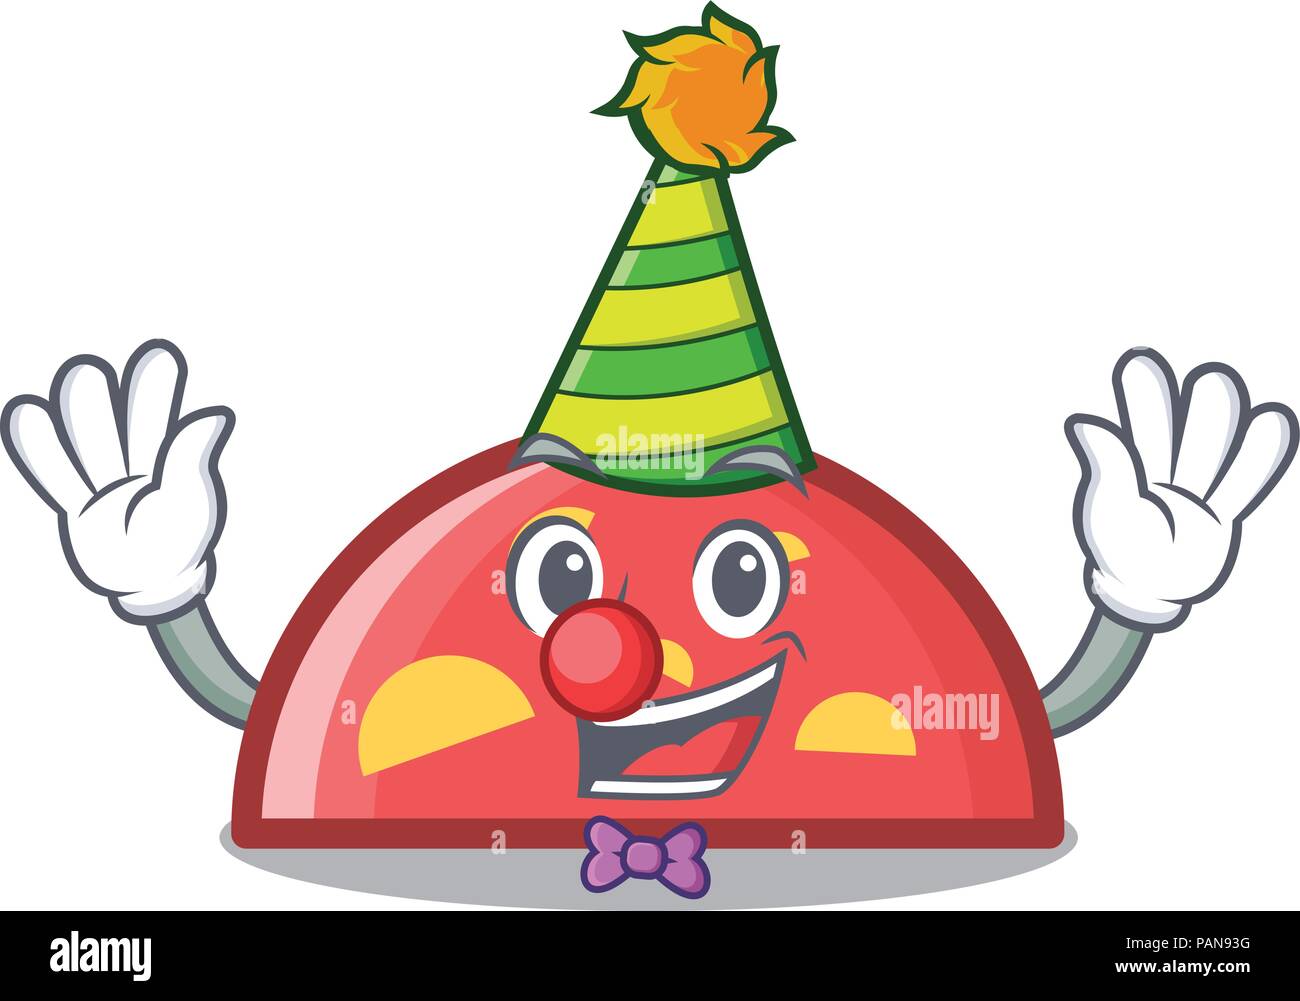 Clown semicircle mascot cartoon style Stock Vector